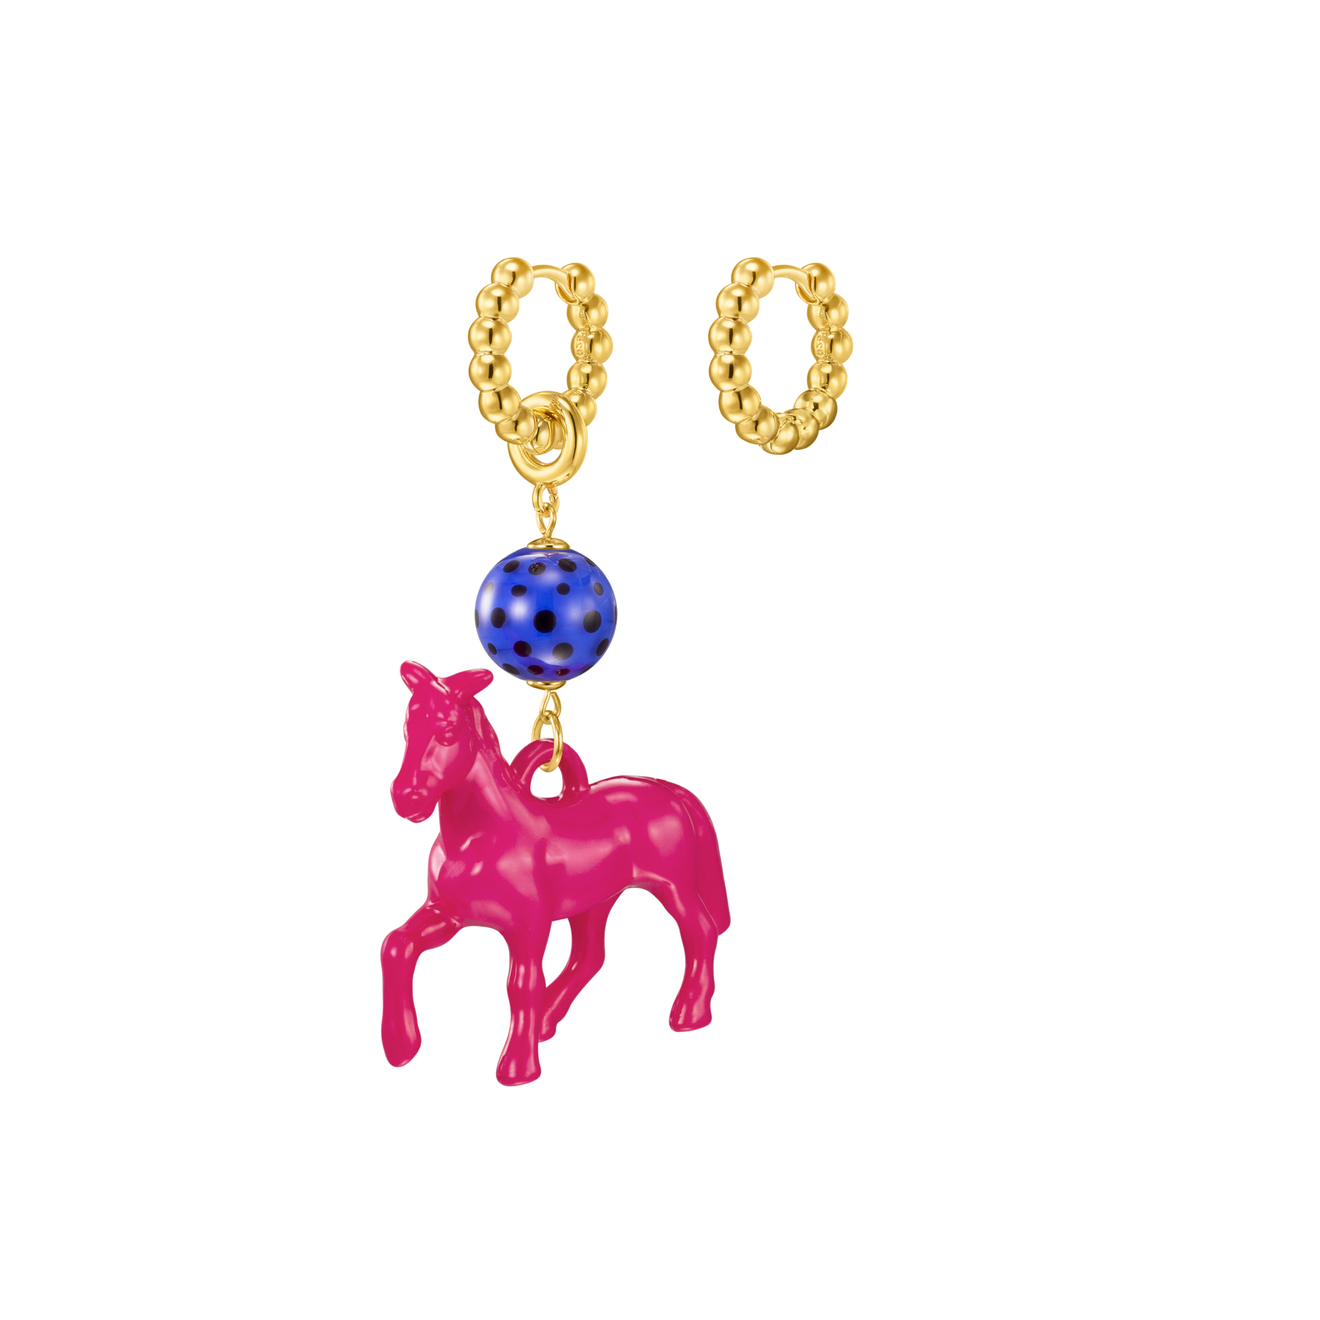 цена Kotlo Studio Fuchsia Horse. Золотистые серьги с ярко-розовой лошадкой и синей бусиной Мурано